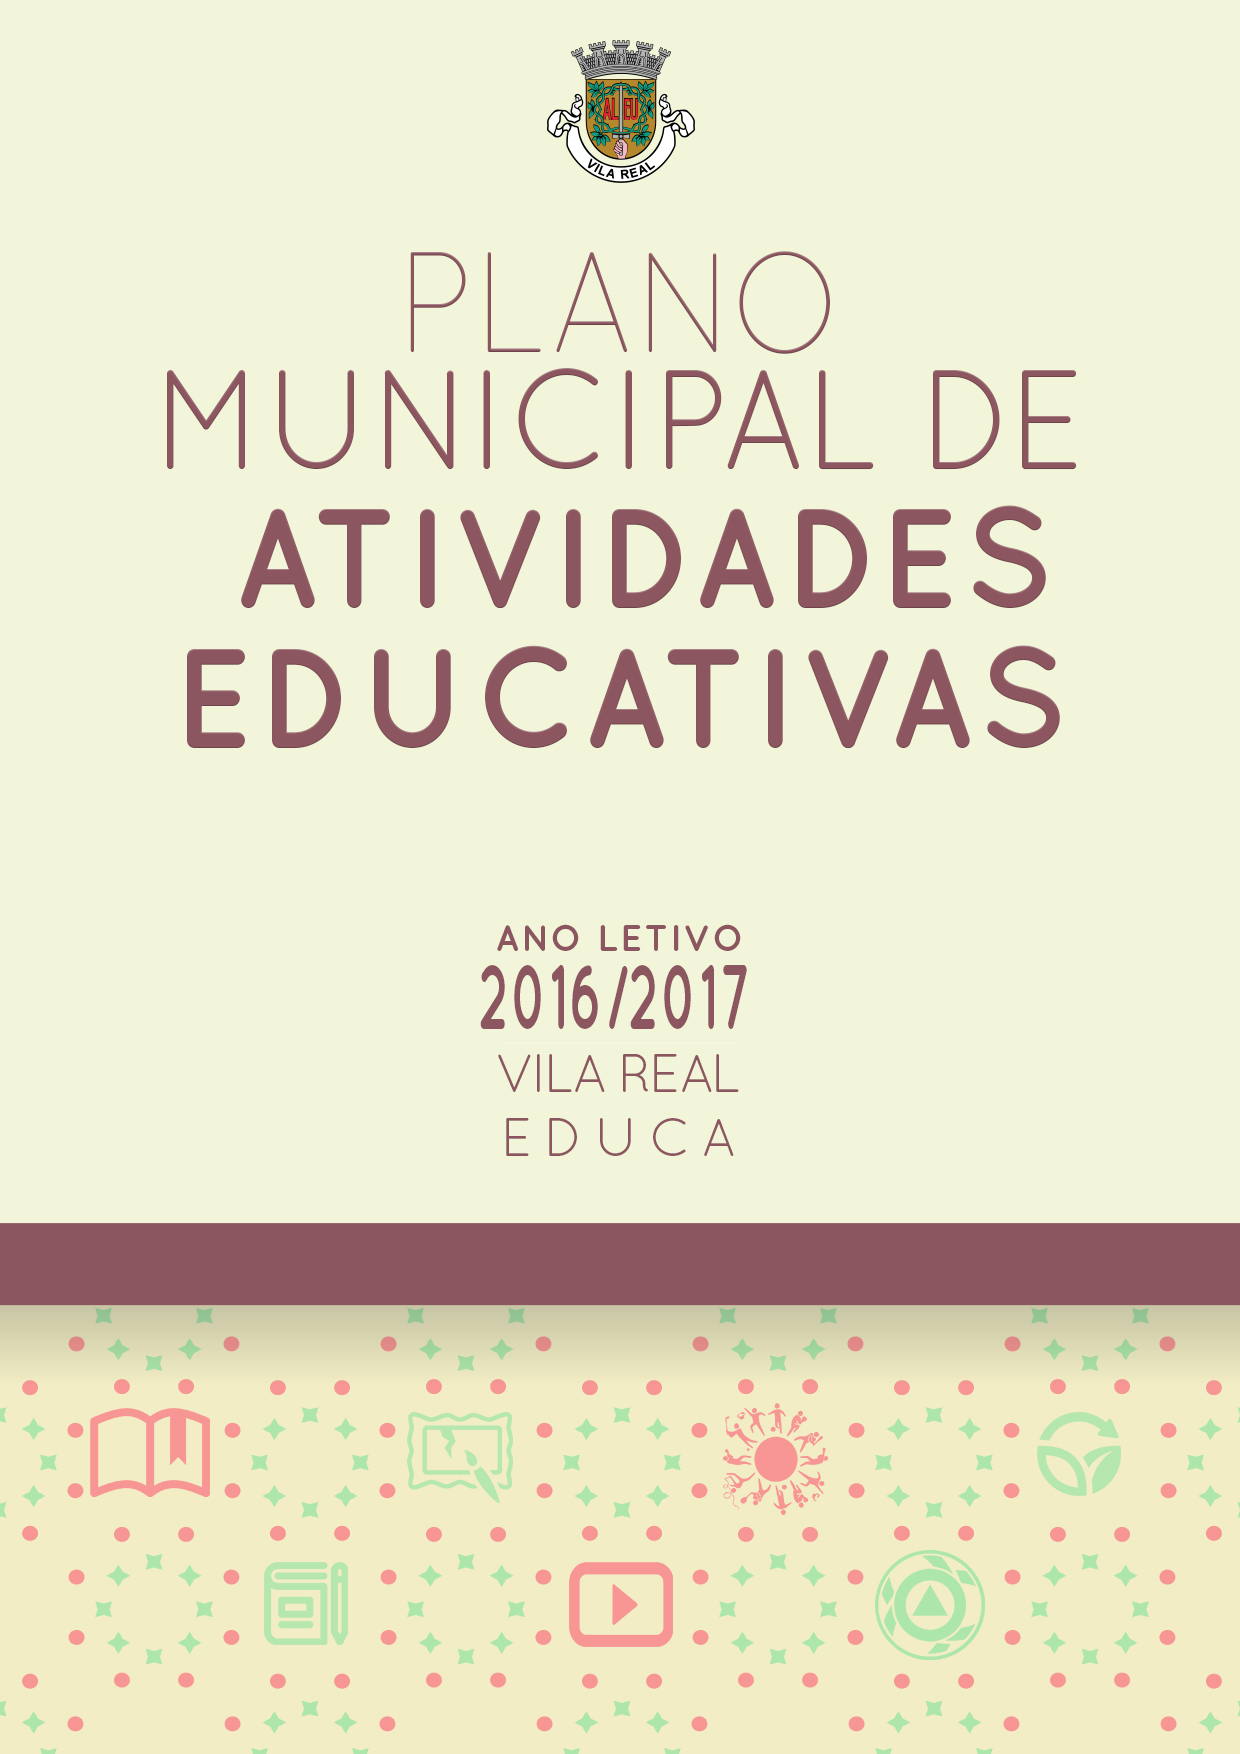 PLANO MUNICIPAL DE ATIVIDADES EDUCATIVAS PARA O ANO LETIVO 2016/17